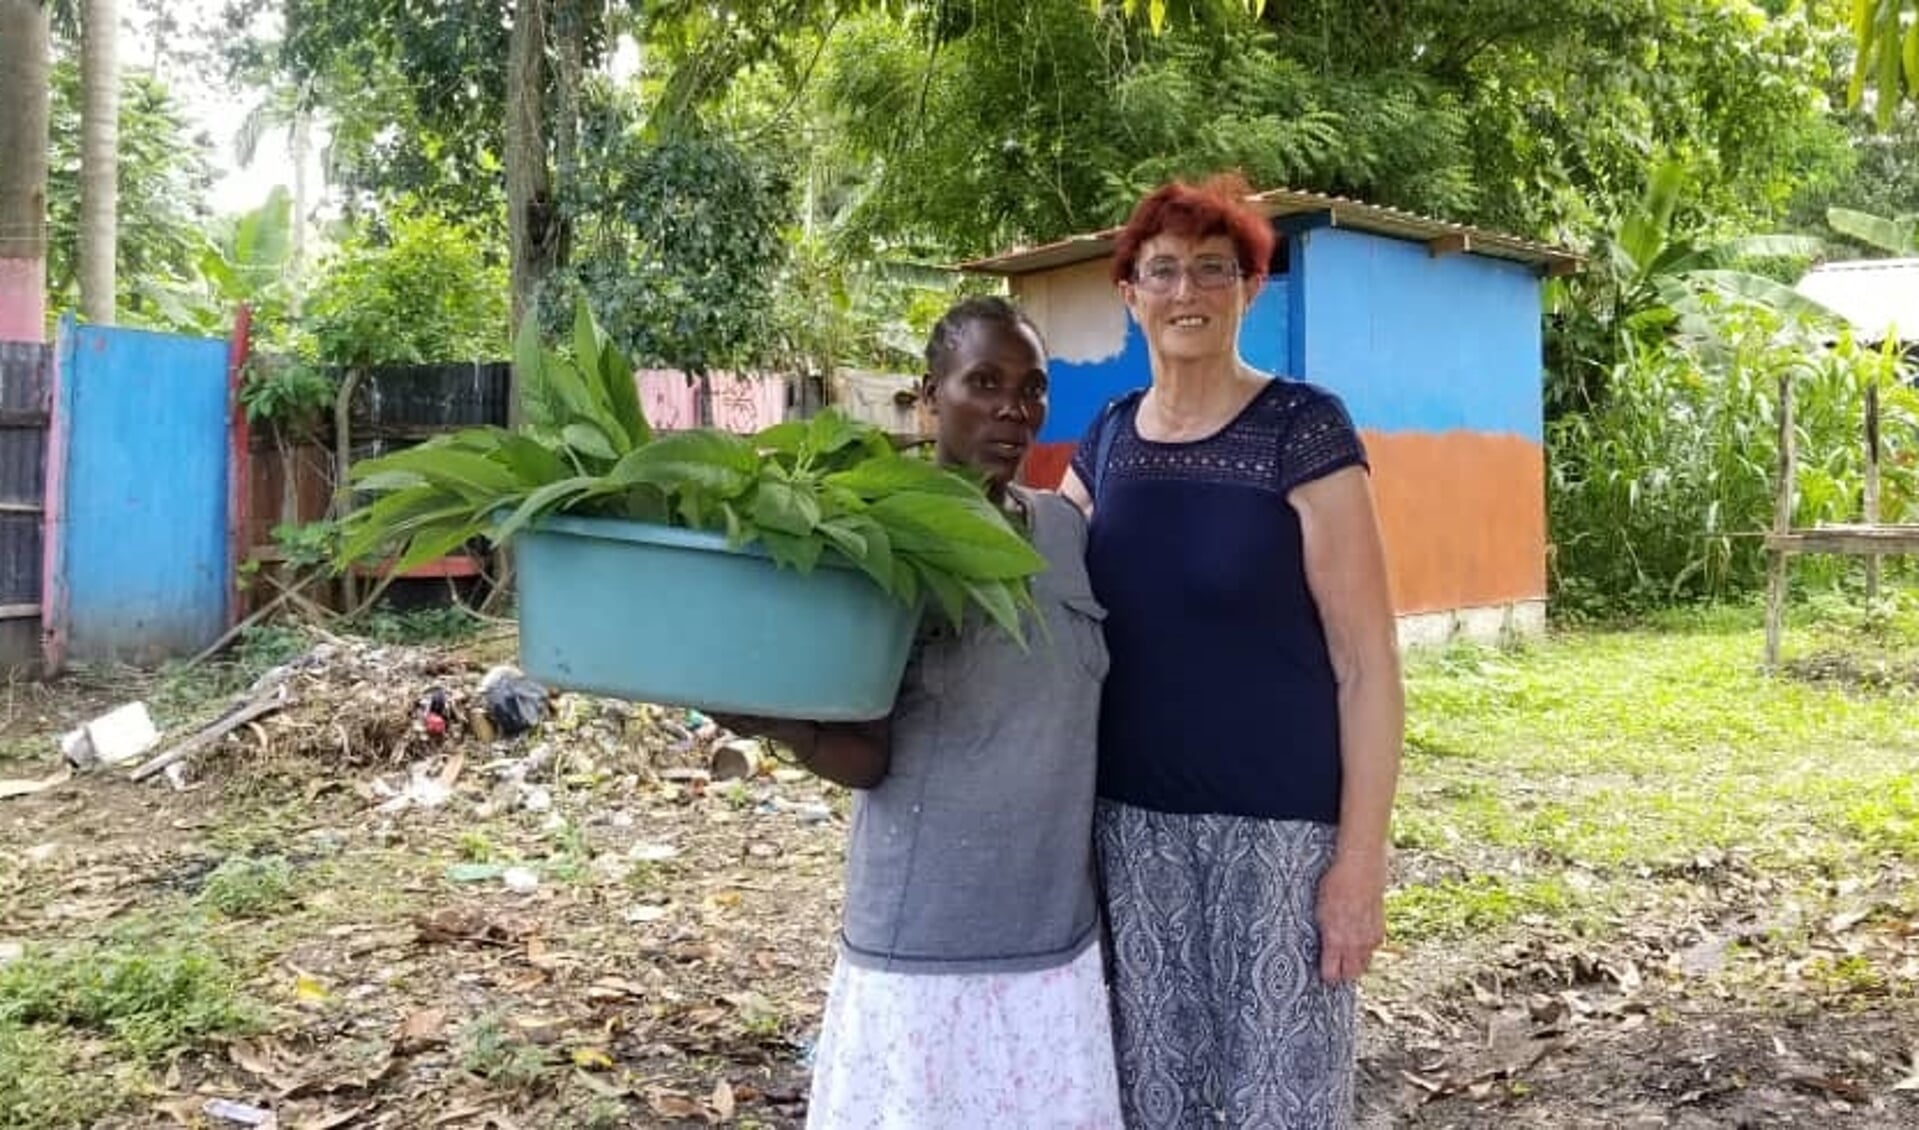 Van de 'Stichting Vrienden van Haïti Nederland', zijn ze drie weken op werkbezoek geweest in Haïti